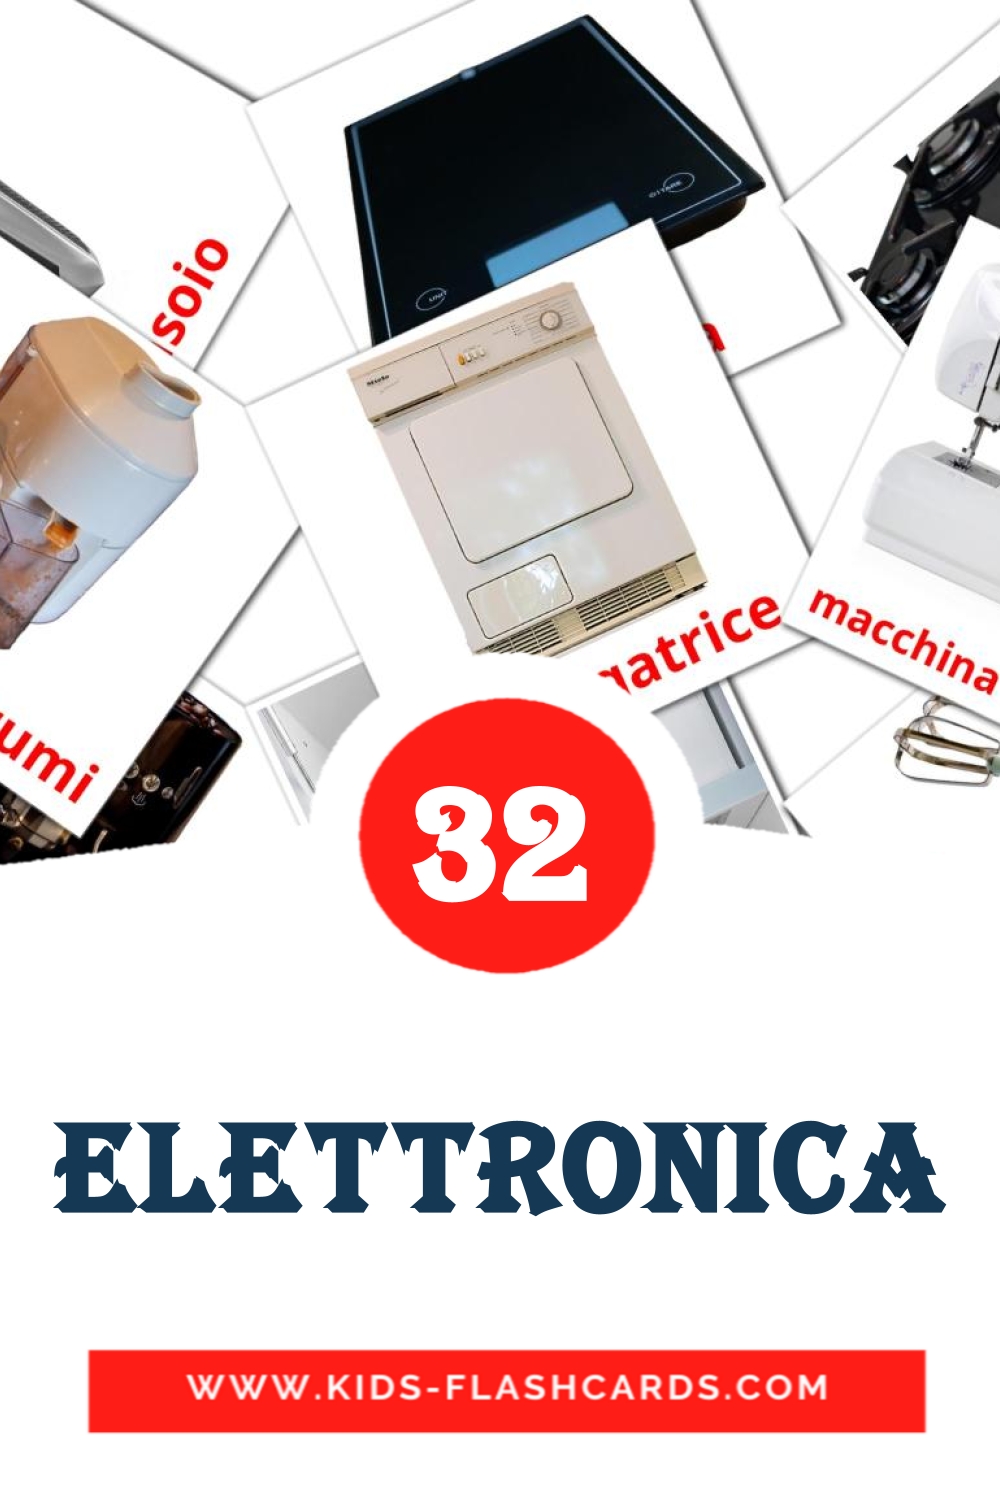 32 Elettronica fotokaarten voor kleuters in het italiaanse